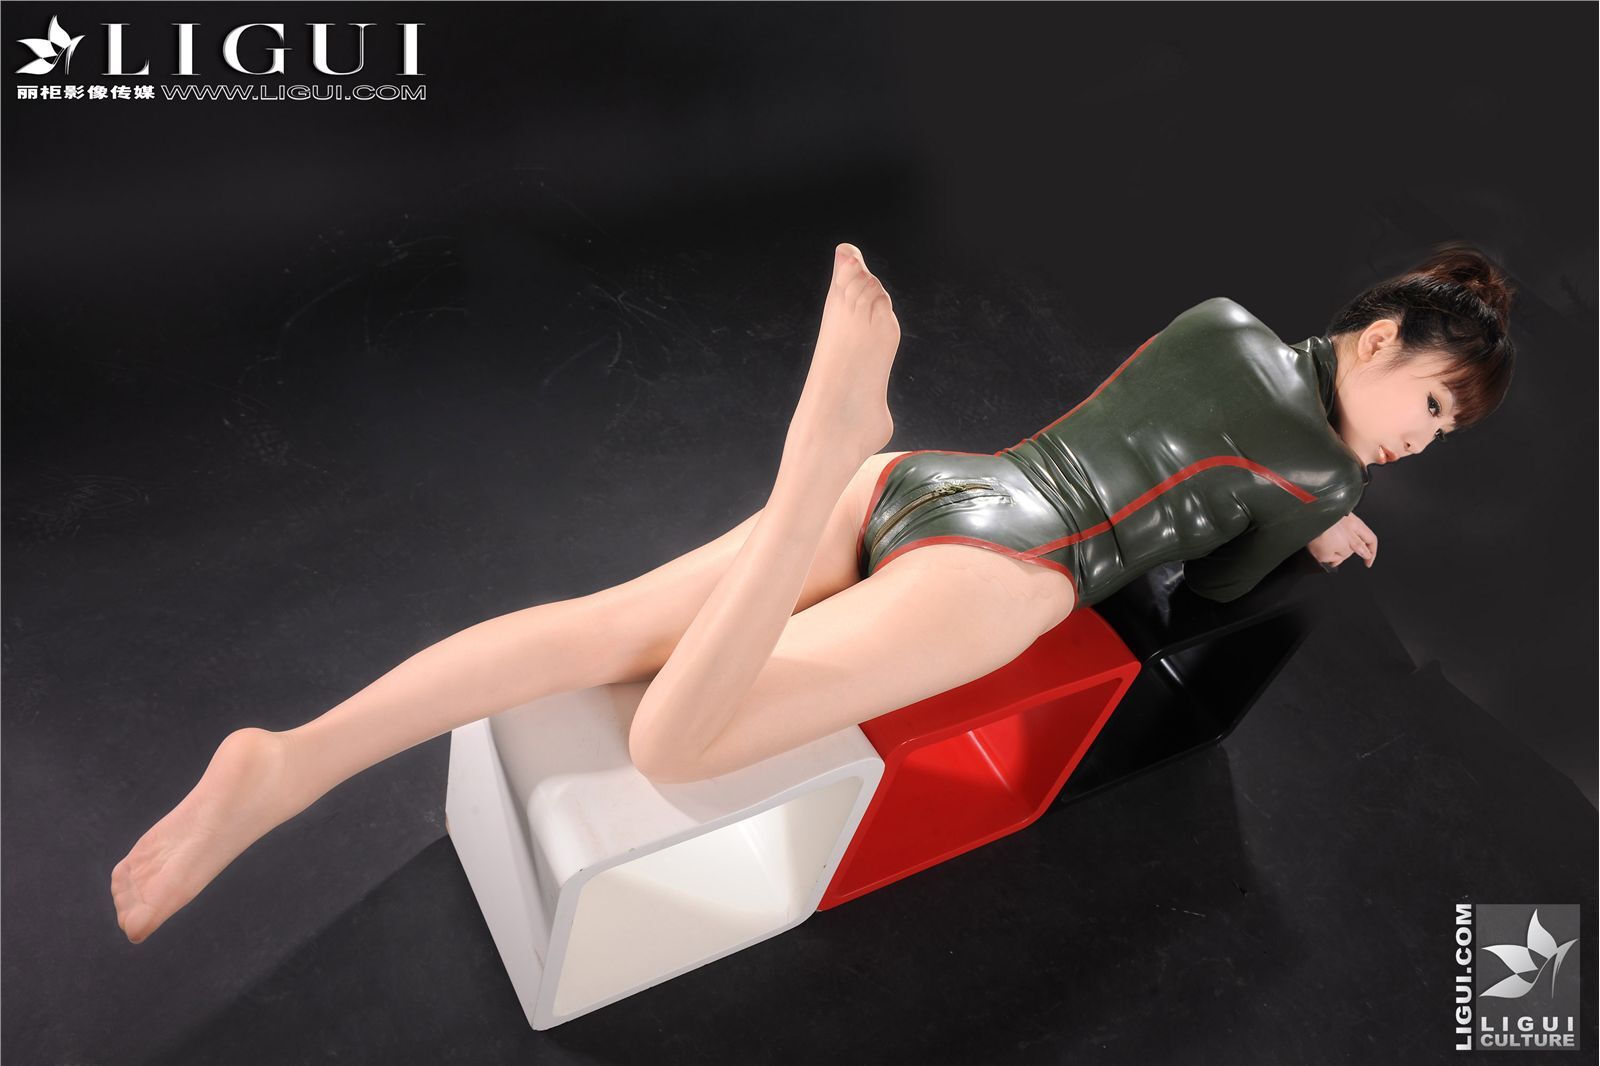 新款性感女軍服 Model - 文静 下 [Ligui]丽柜丝袜